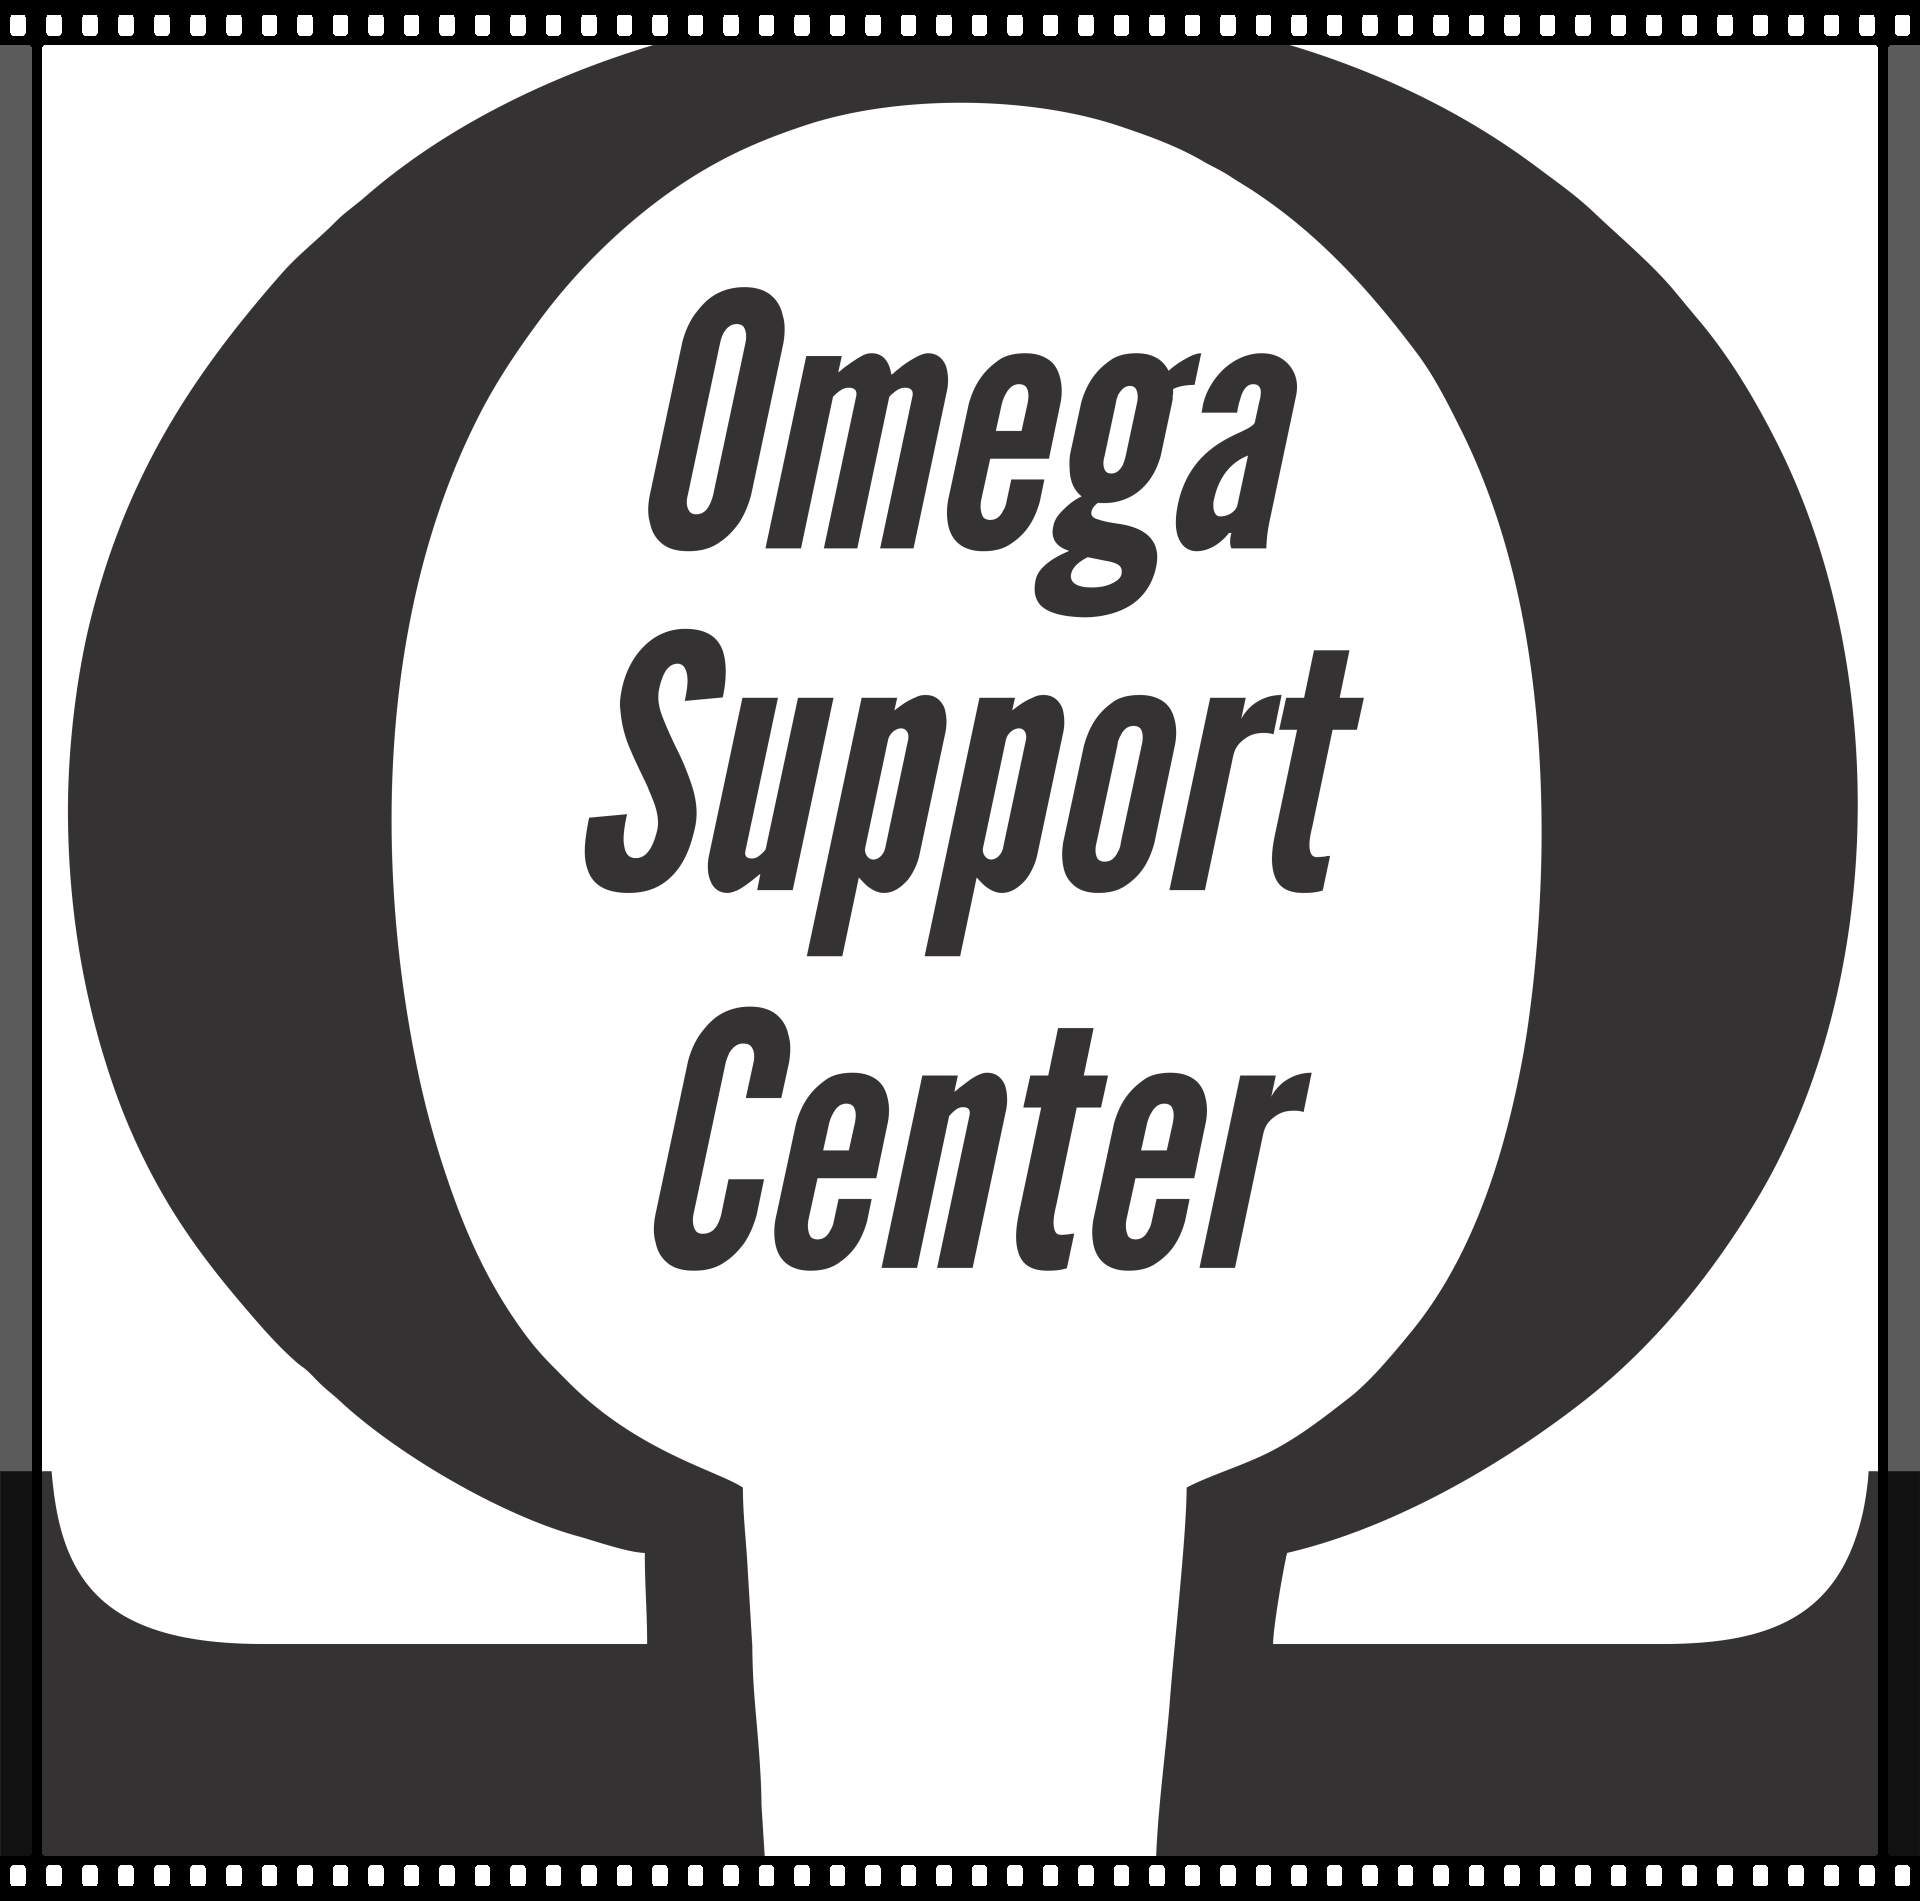 Omega Support Center